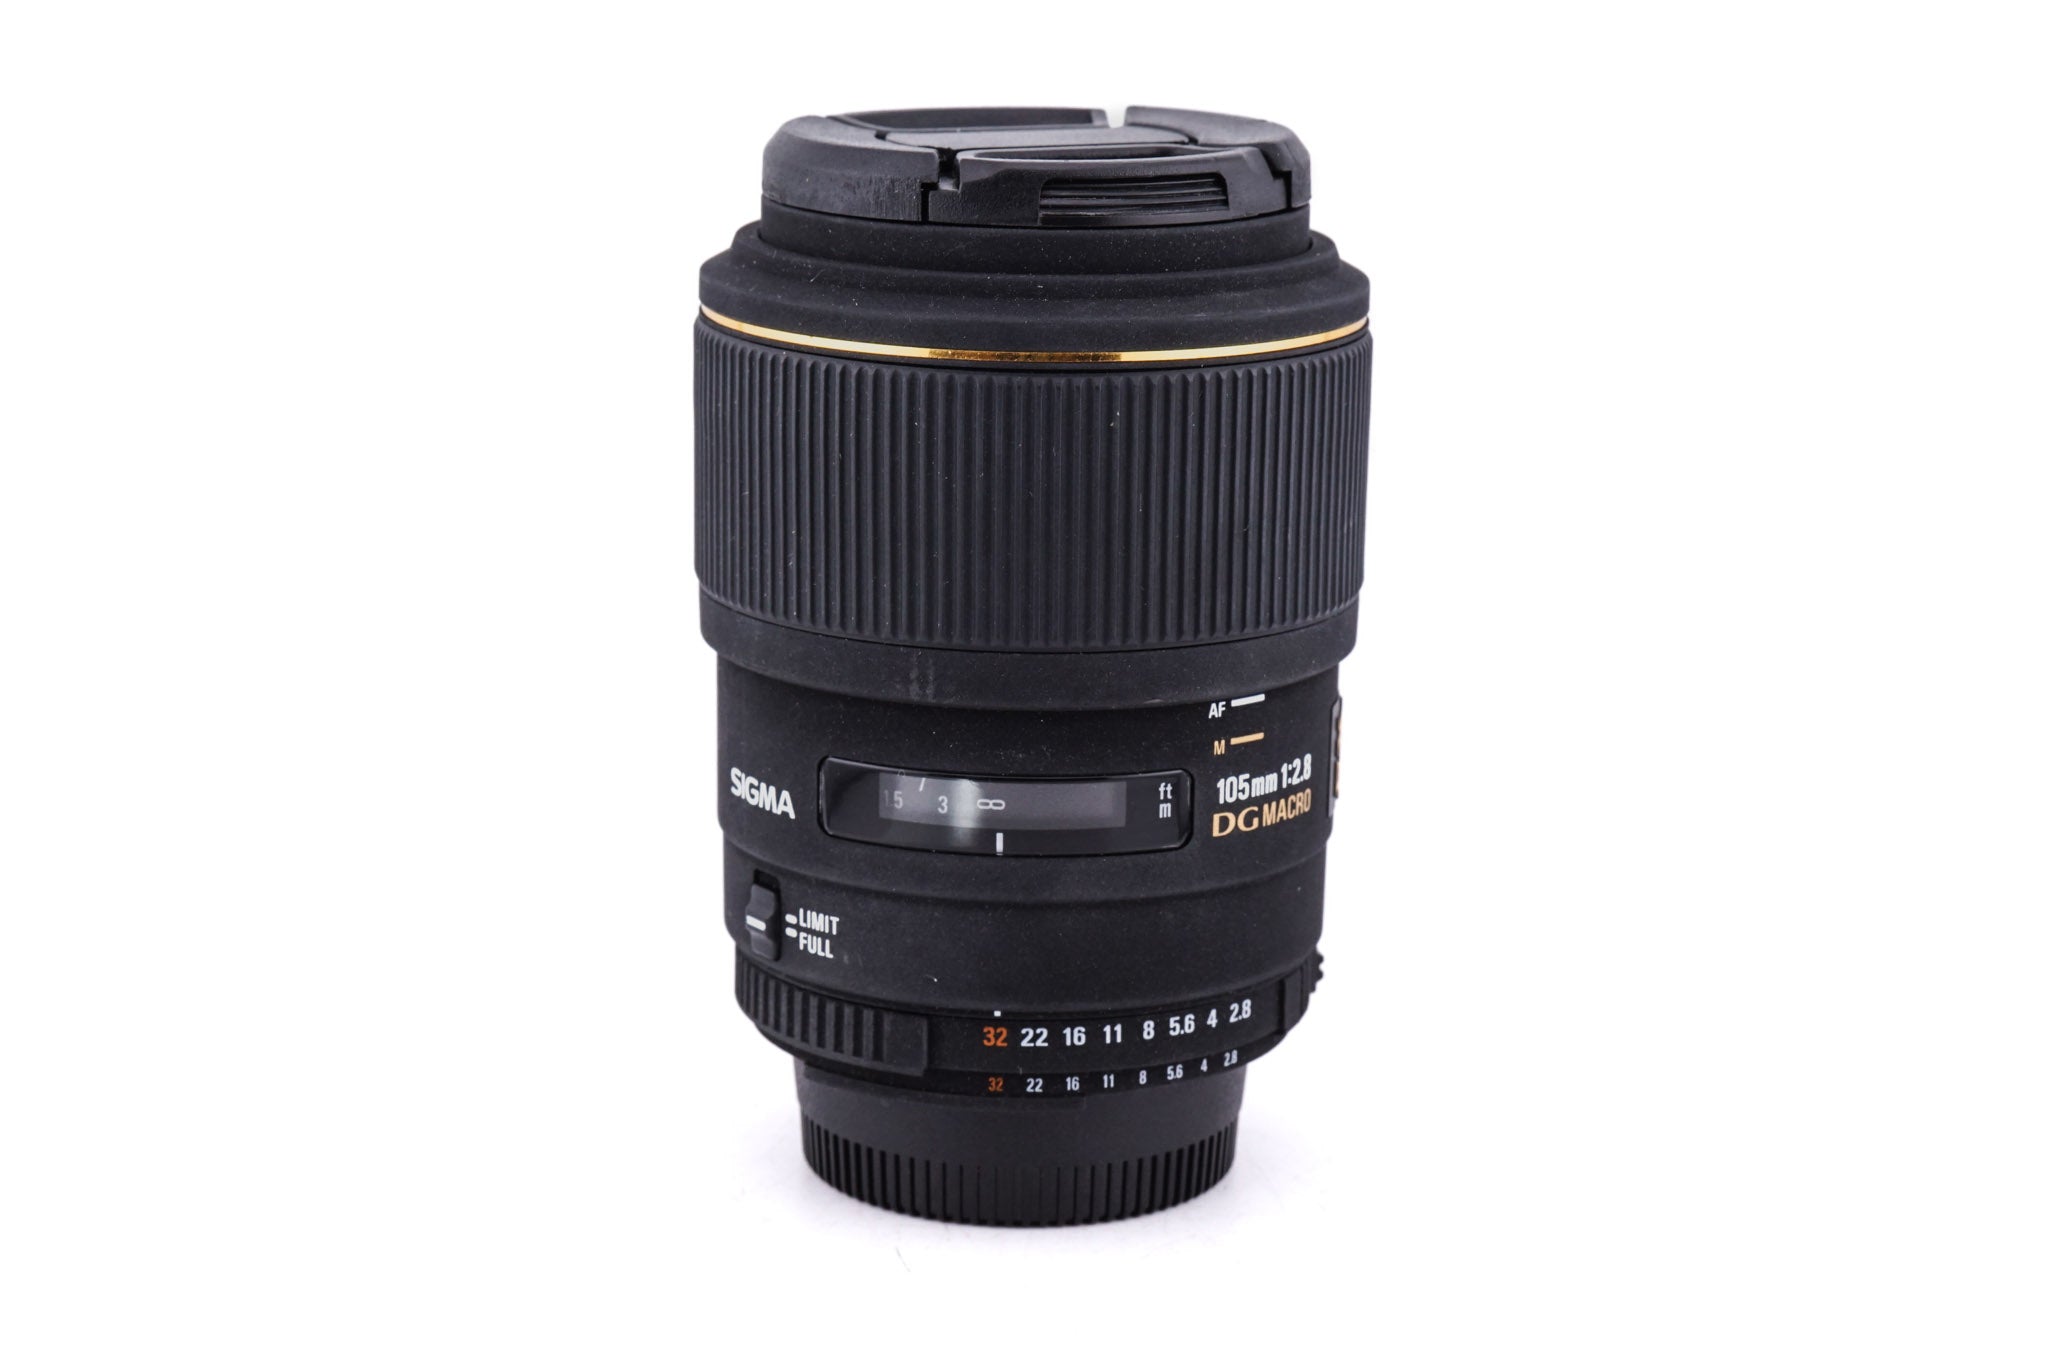 Sigma 105mm f2.8 EX DG Macro - Lens